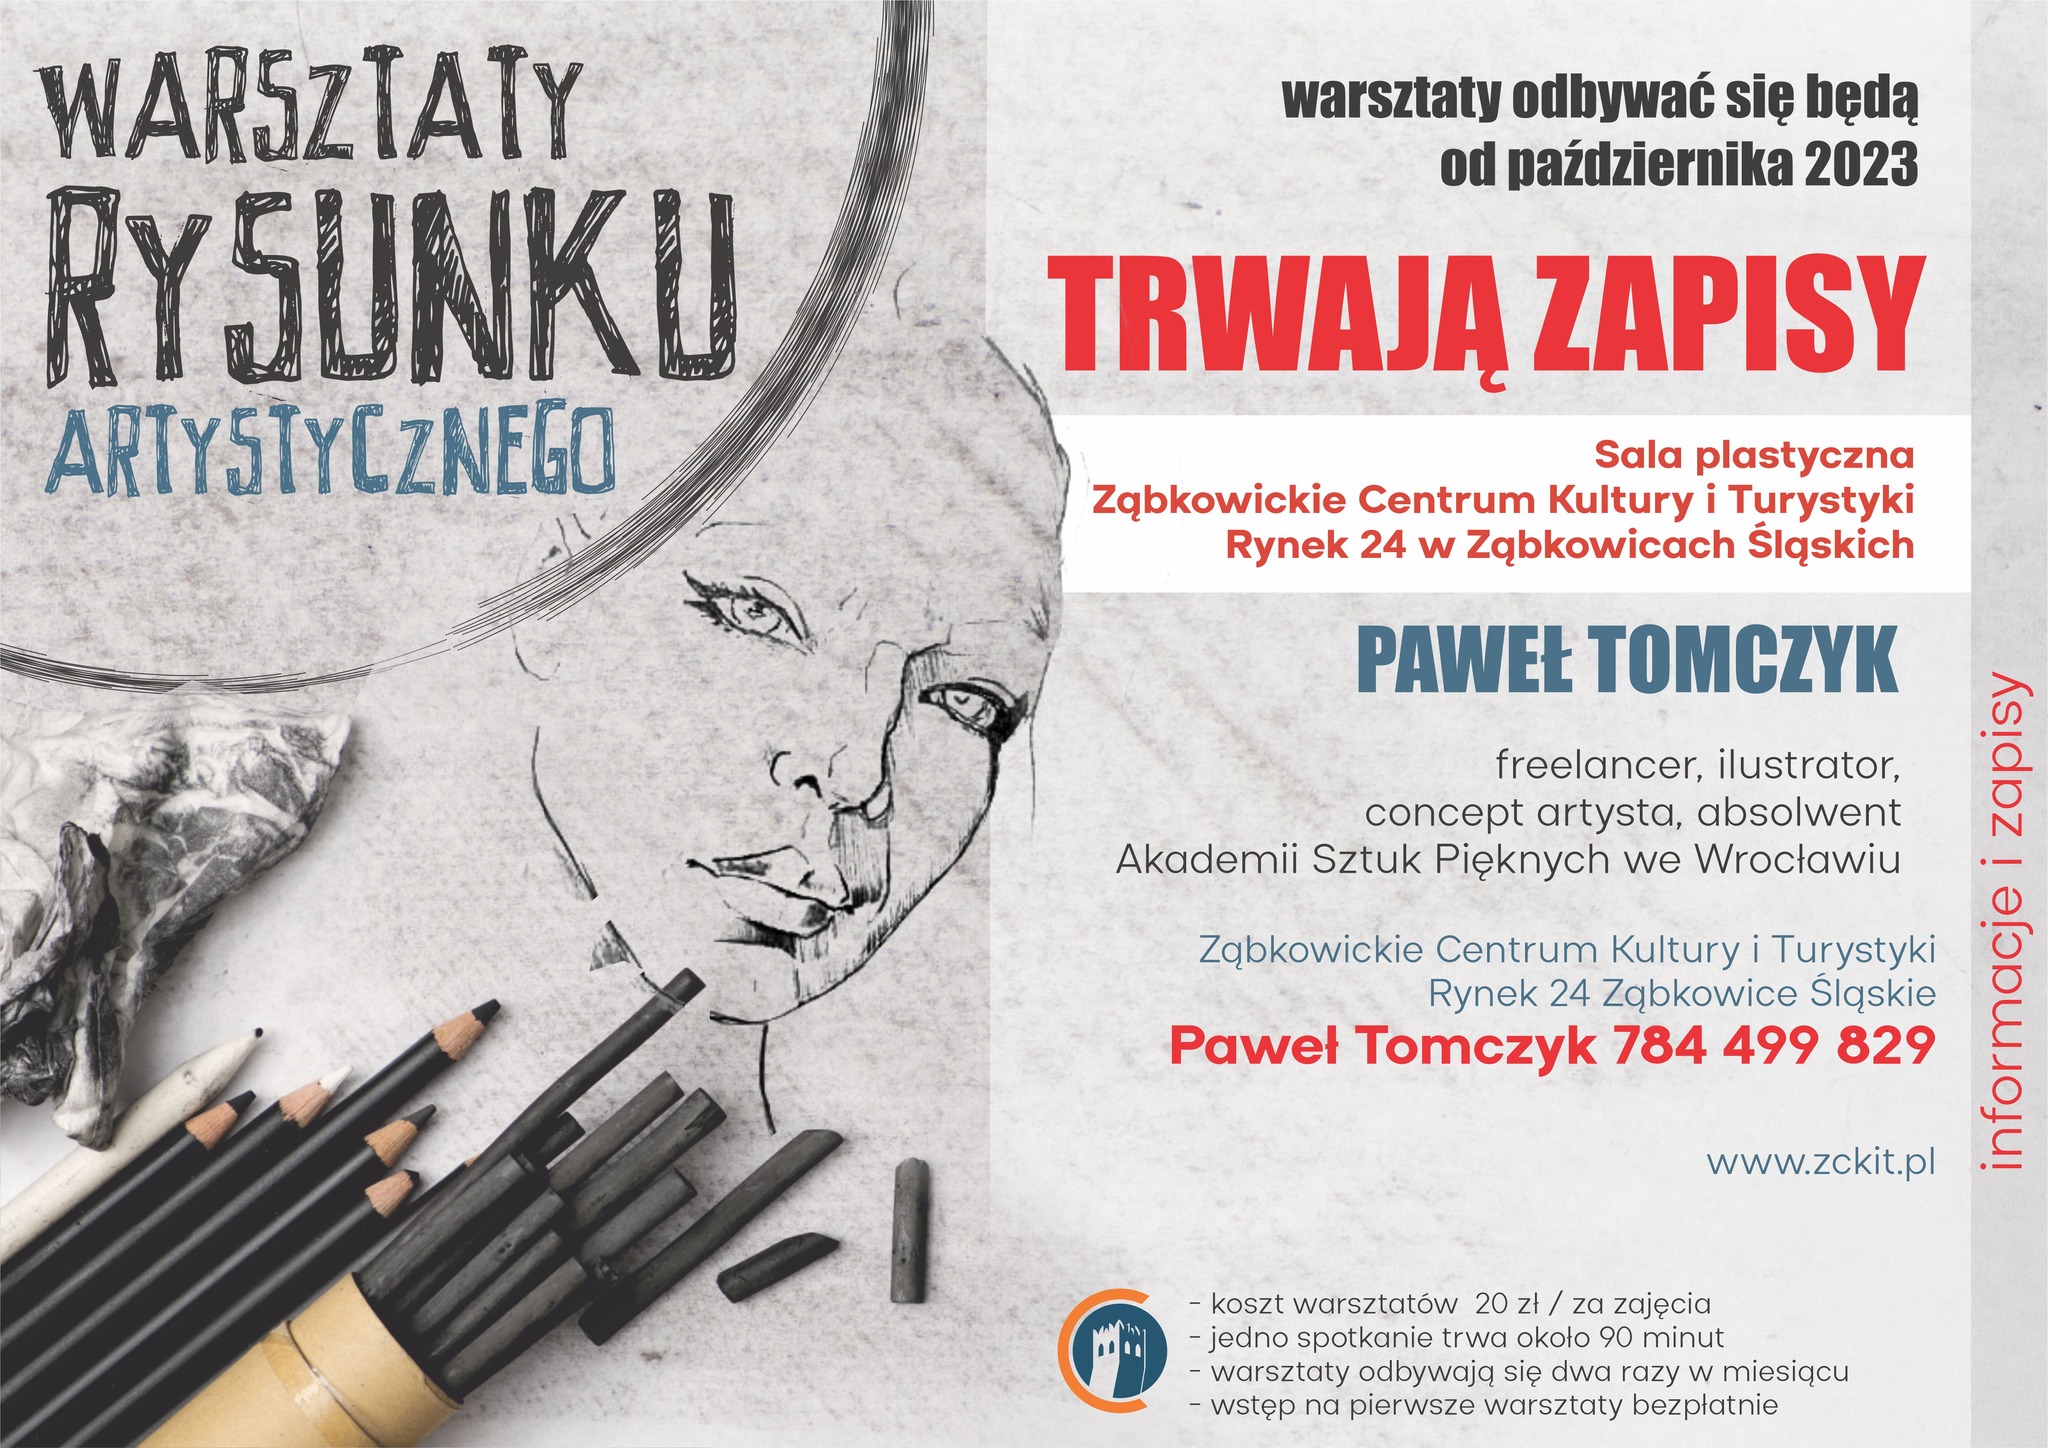 Plakat informacyjny o warsztatach rysunku artystycznego prowadzonego przez Pawła Tomczyka w Ząbkowickim Centrum Kultury i Turystyki. Na plakacie znajduje się rysunek kobiety na szarym tle oraz czarne ołówki i węgle.